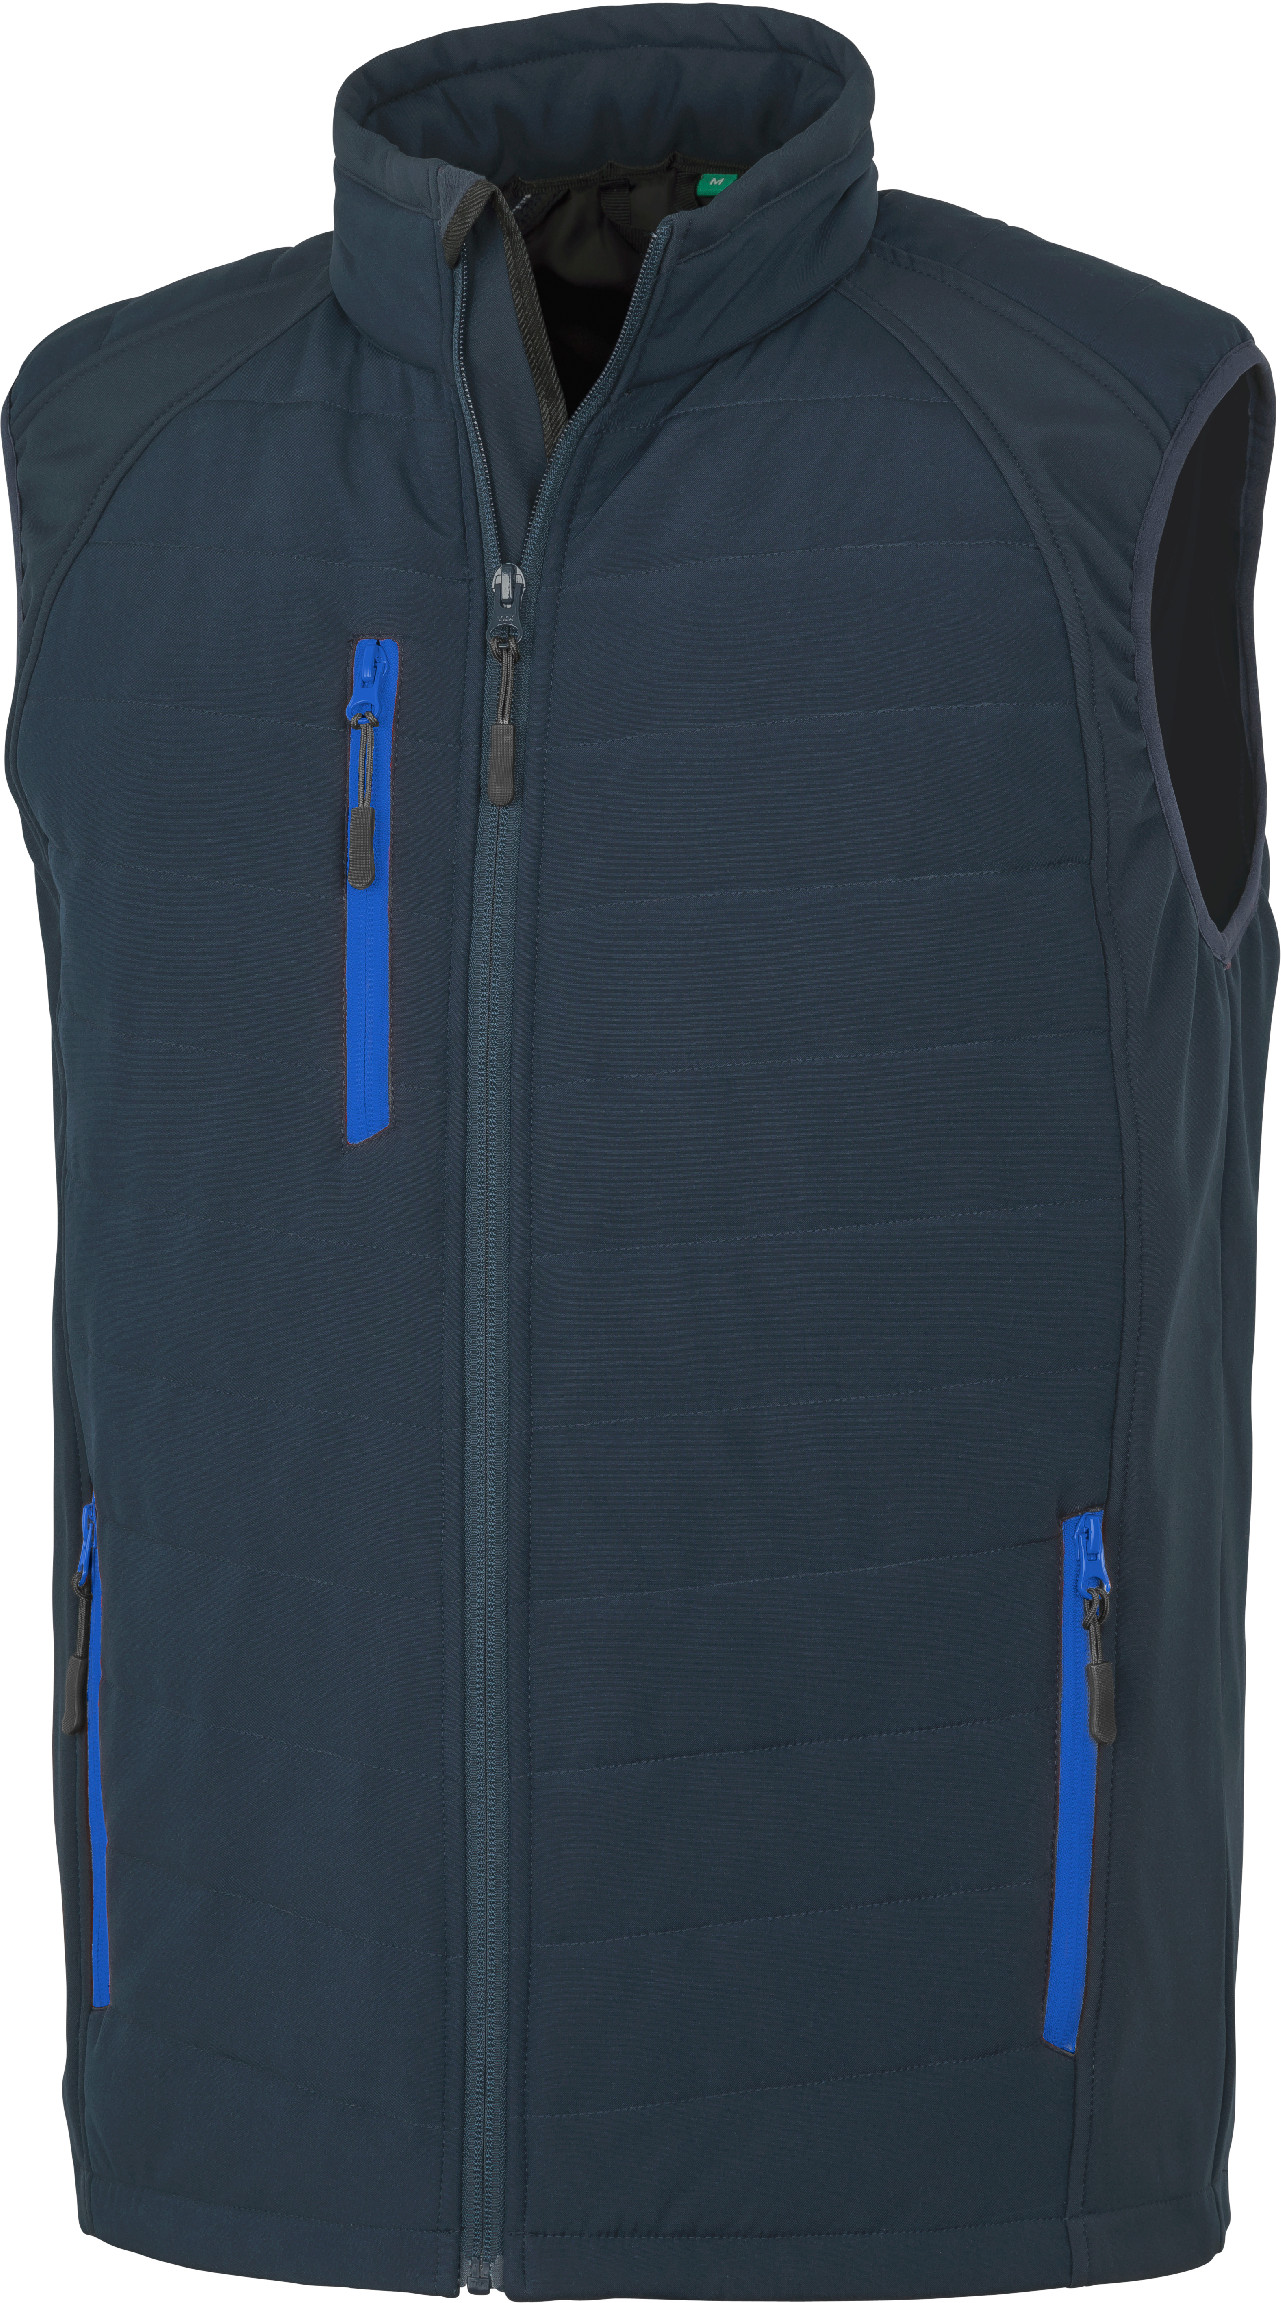 Polstrovaná softshell vesta Compass R238X Barva: námořní modrá-modrá, Velikost: L